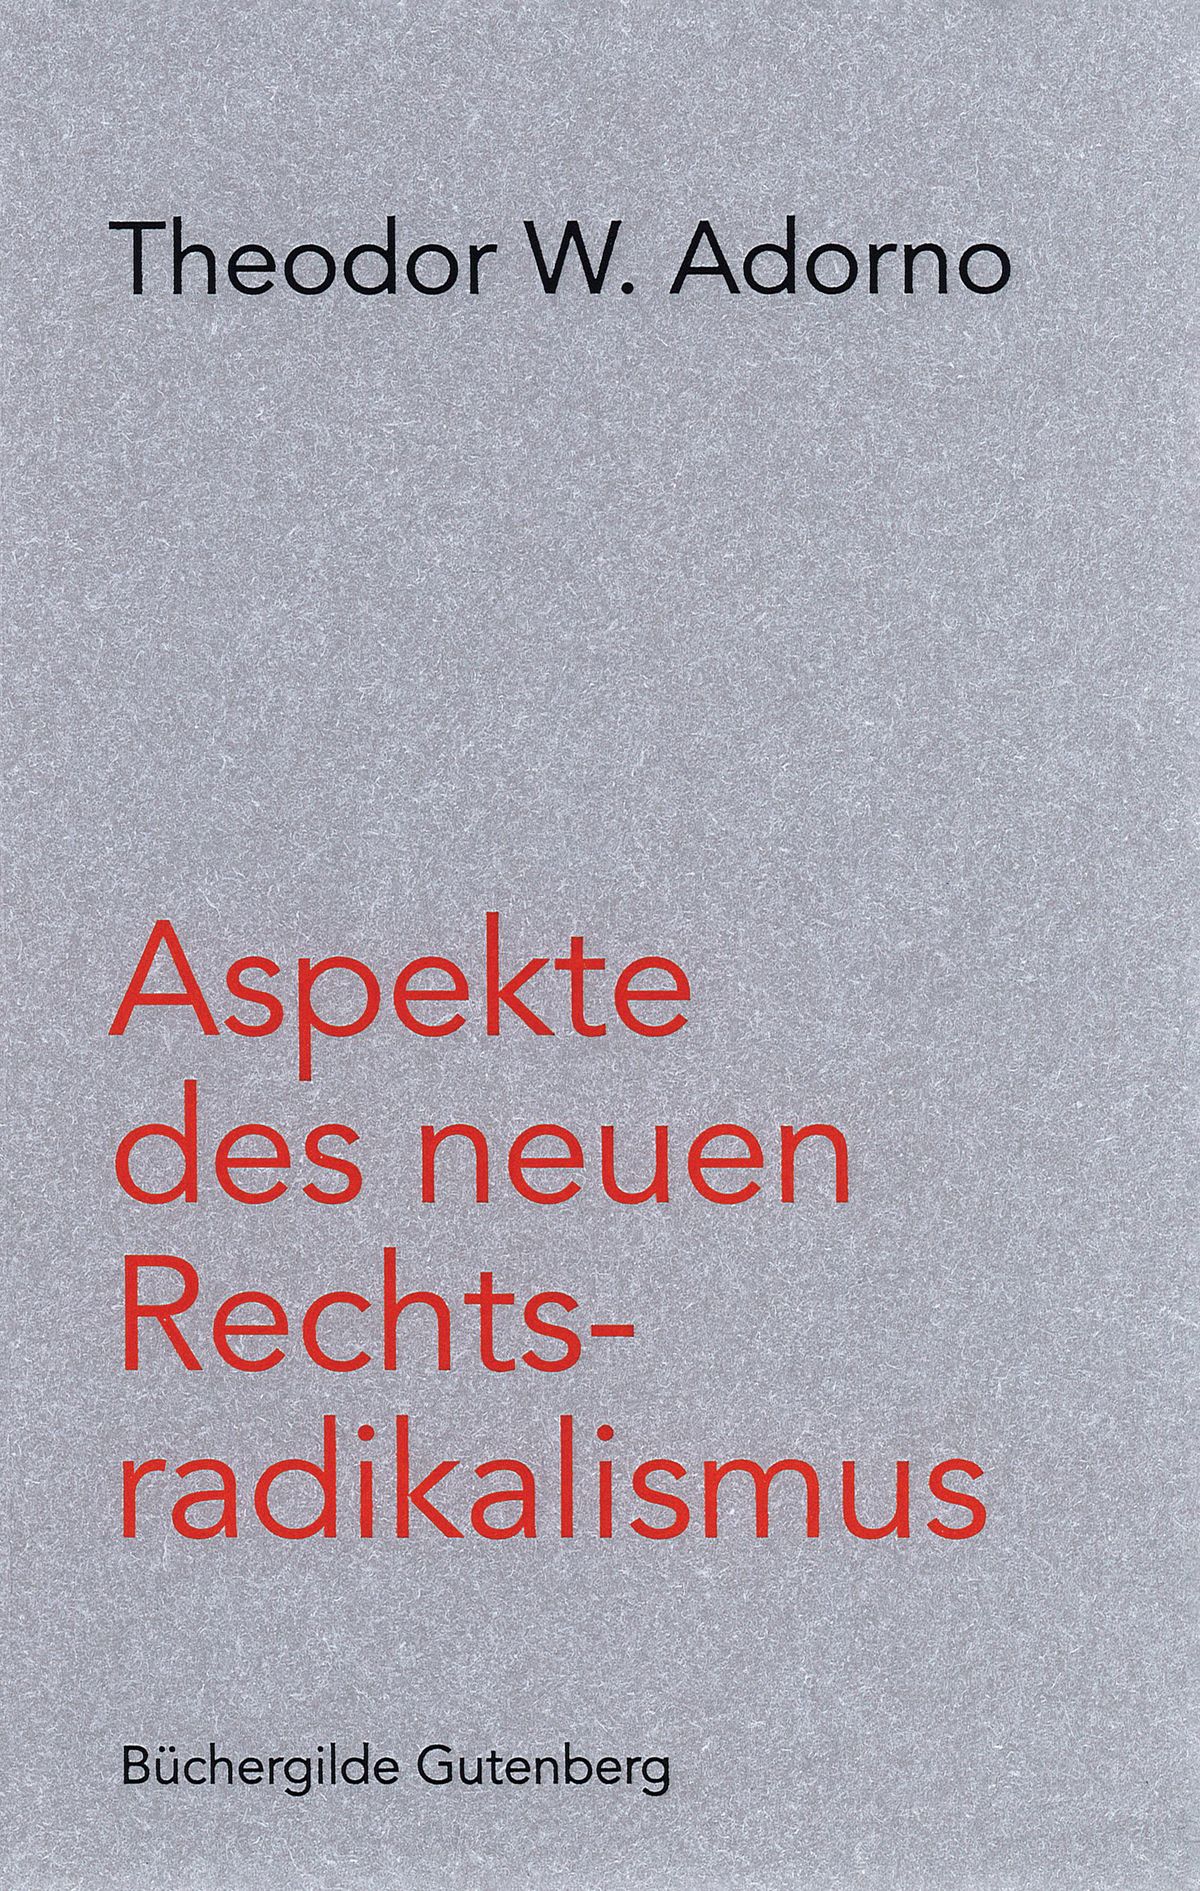 171619_Adorno_Rechtsradikalismus_3D_01.jpg